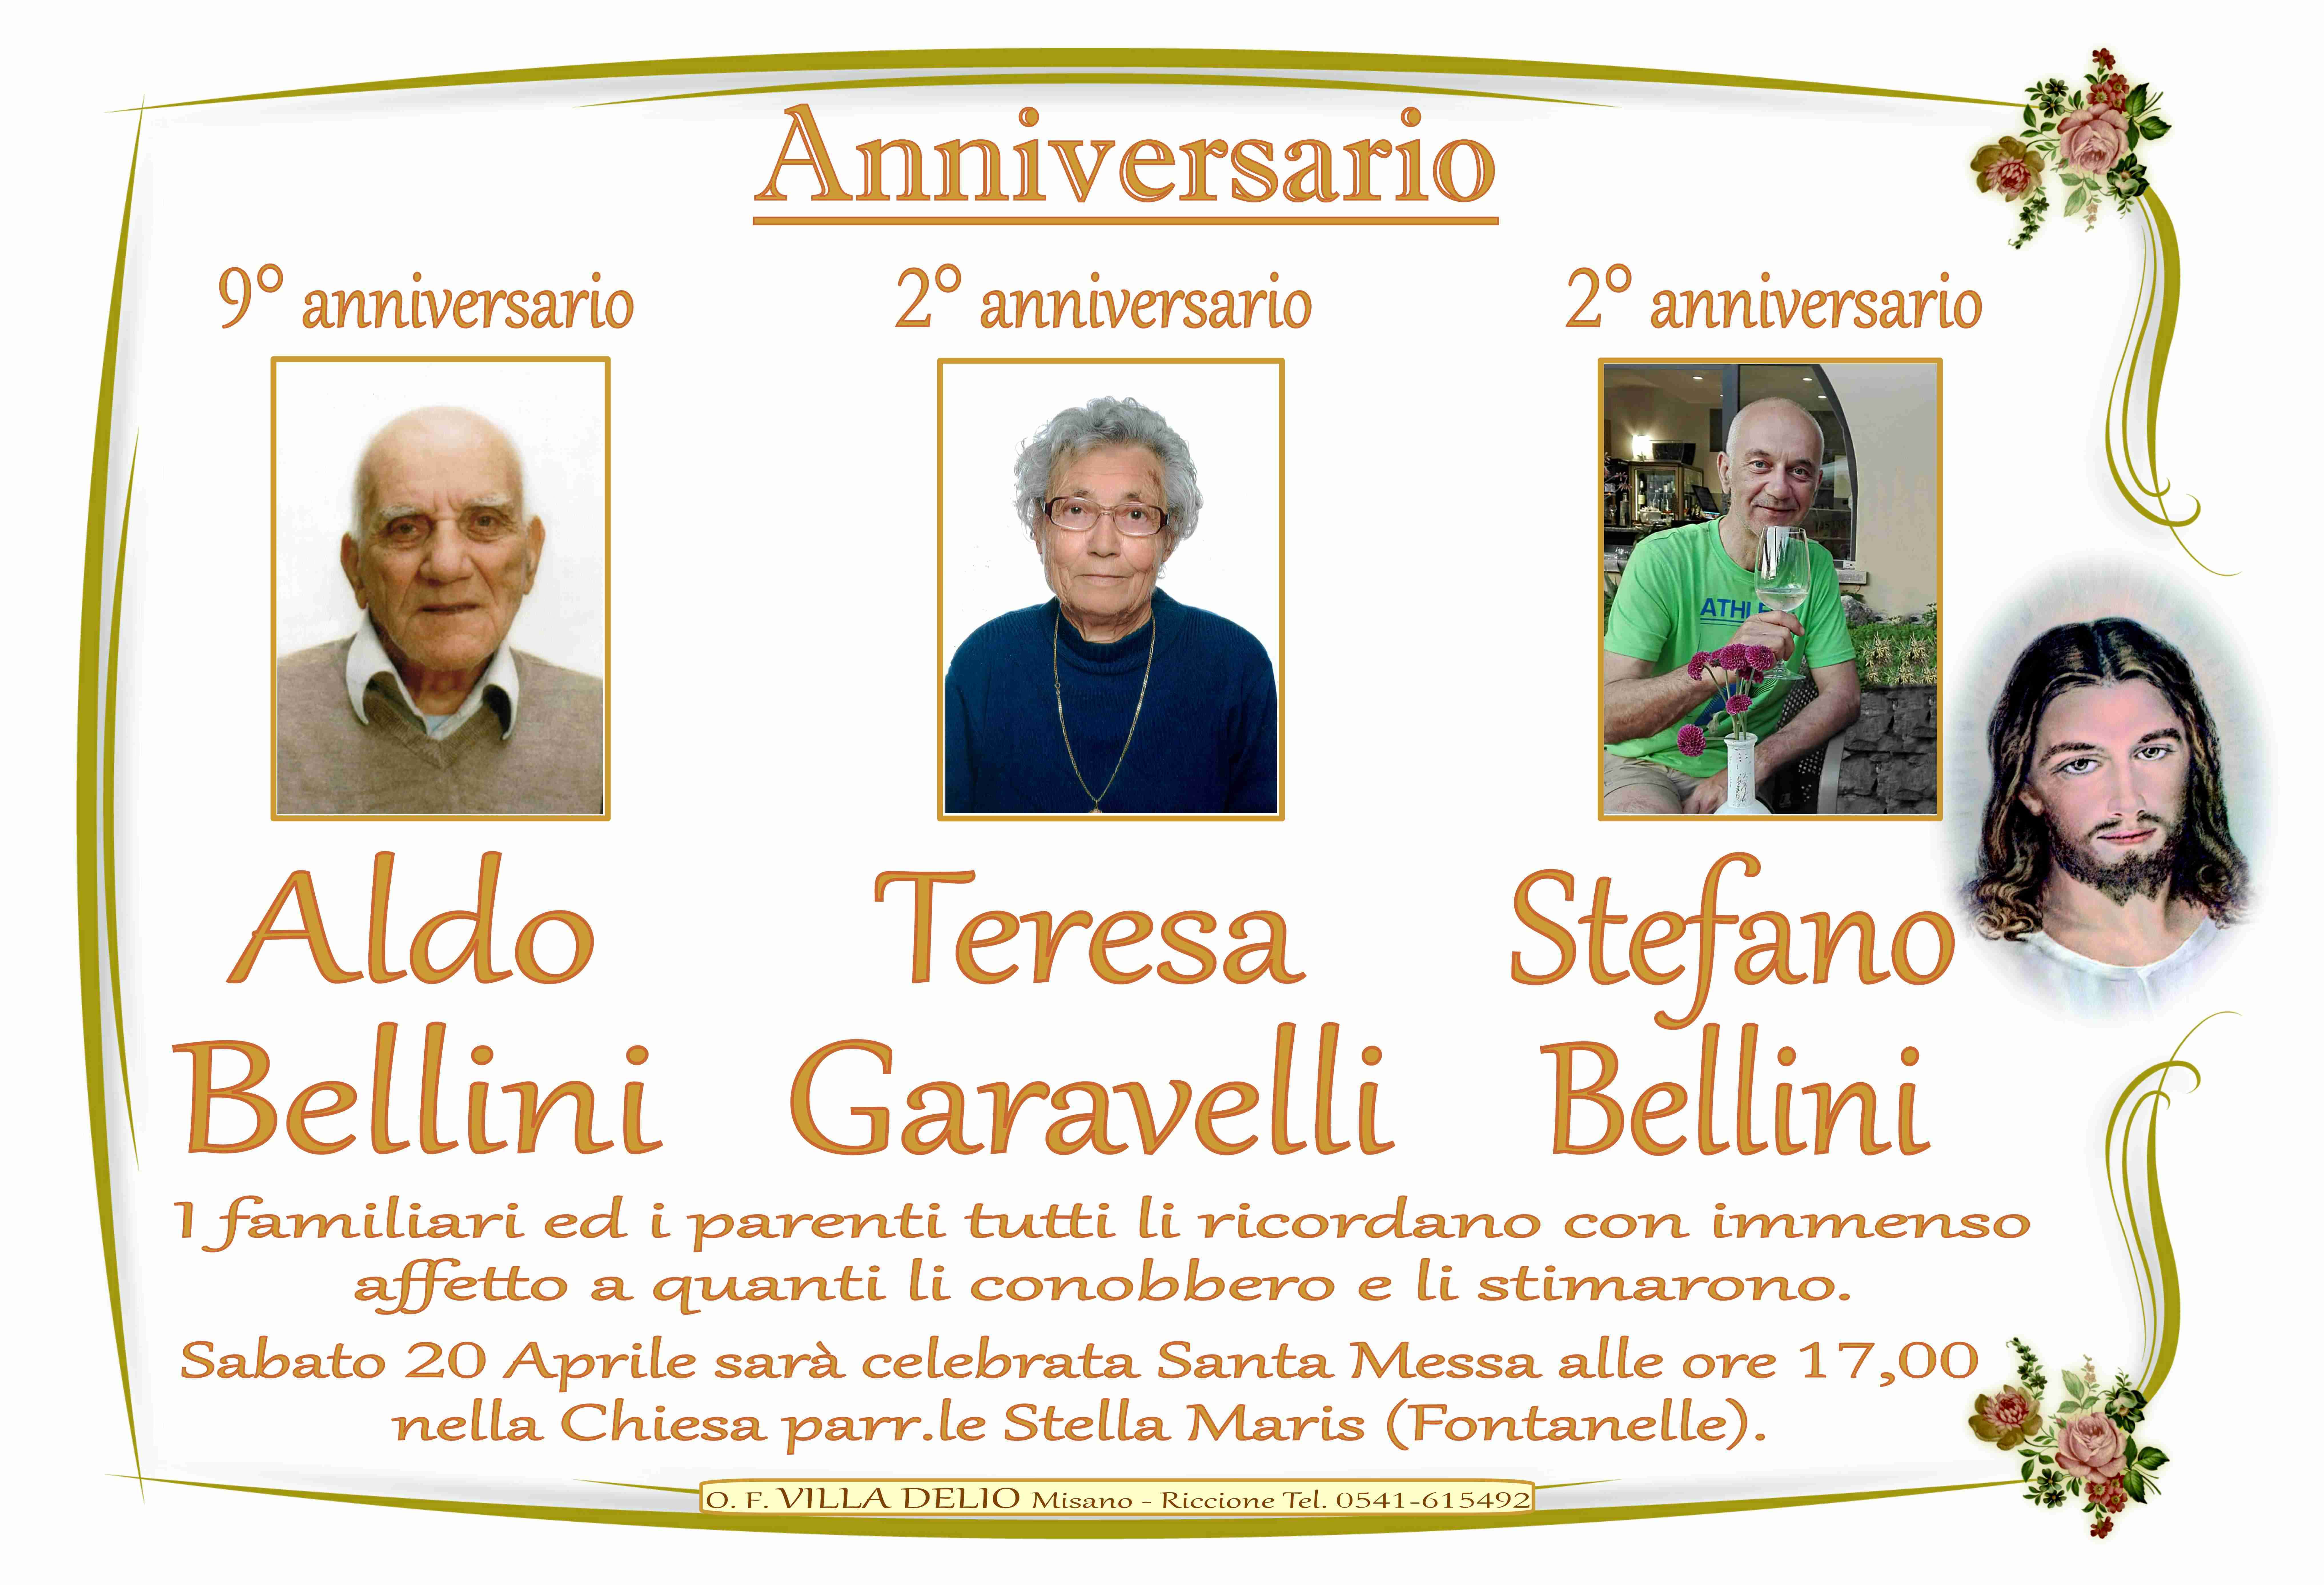 Aldo Bellini - Teresa Garavelli - Stefano Bellini